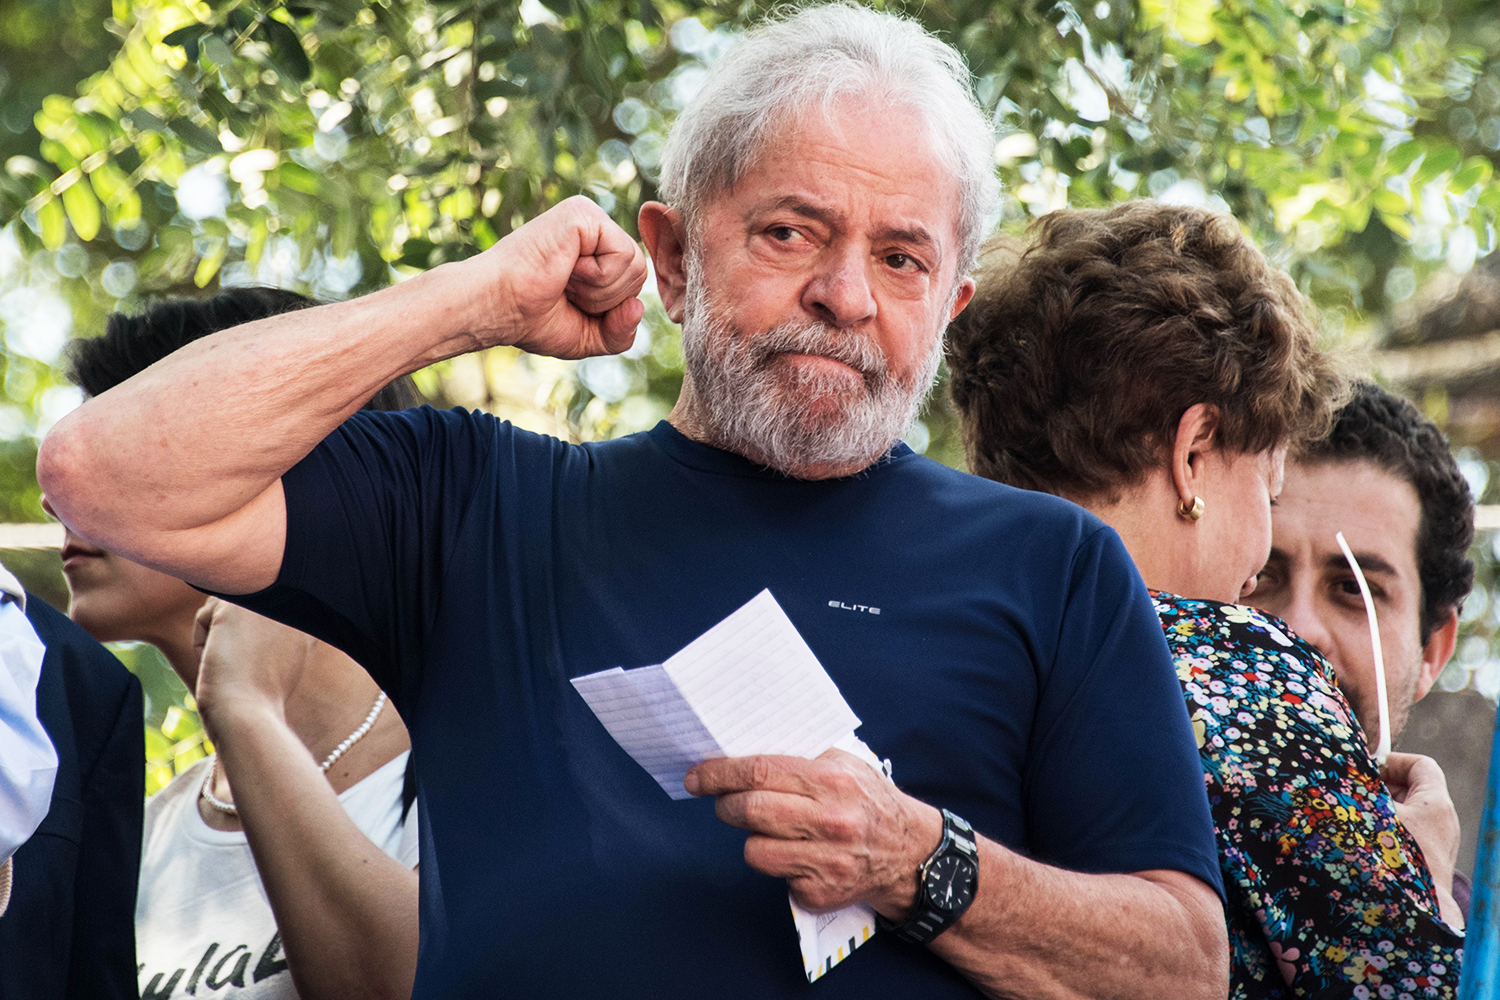 SUCESSÃO PRESIDENCIAL: LULA É FIEL DA BALANÇA? É. - News Rondônia